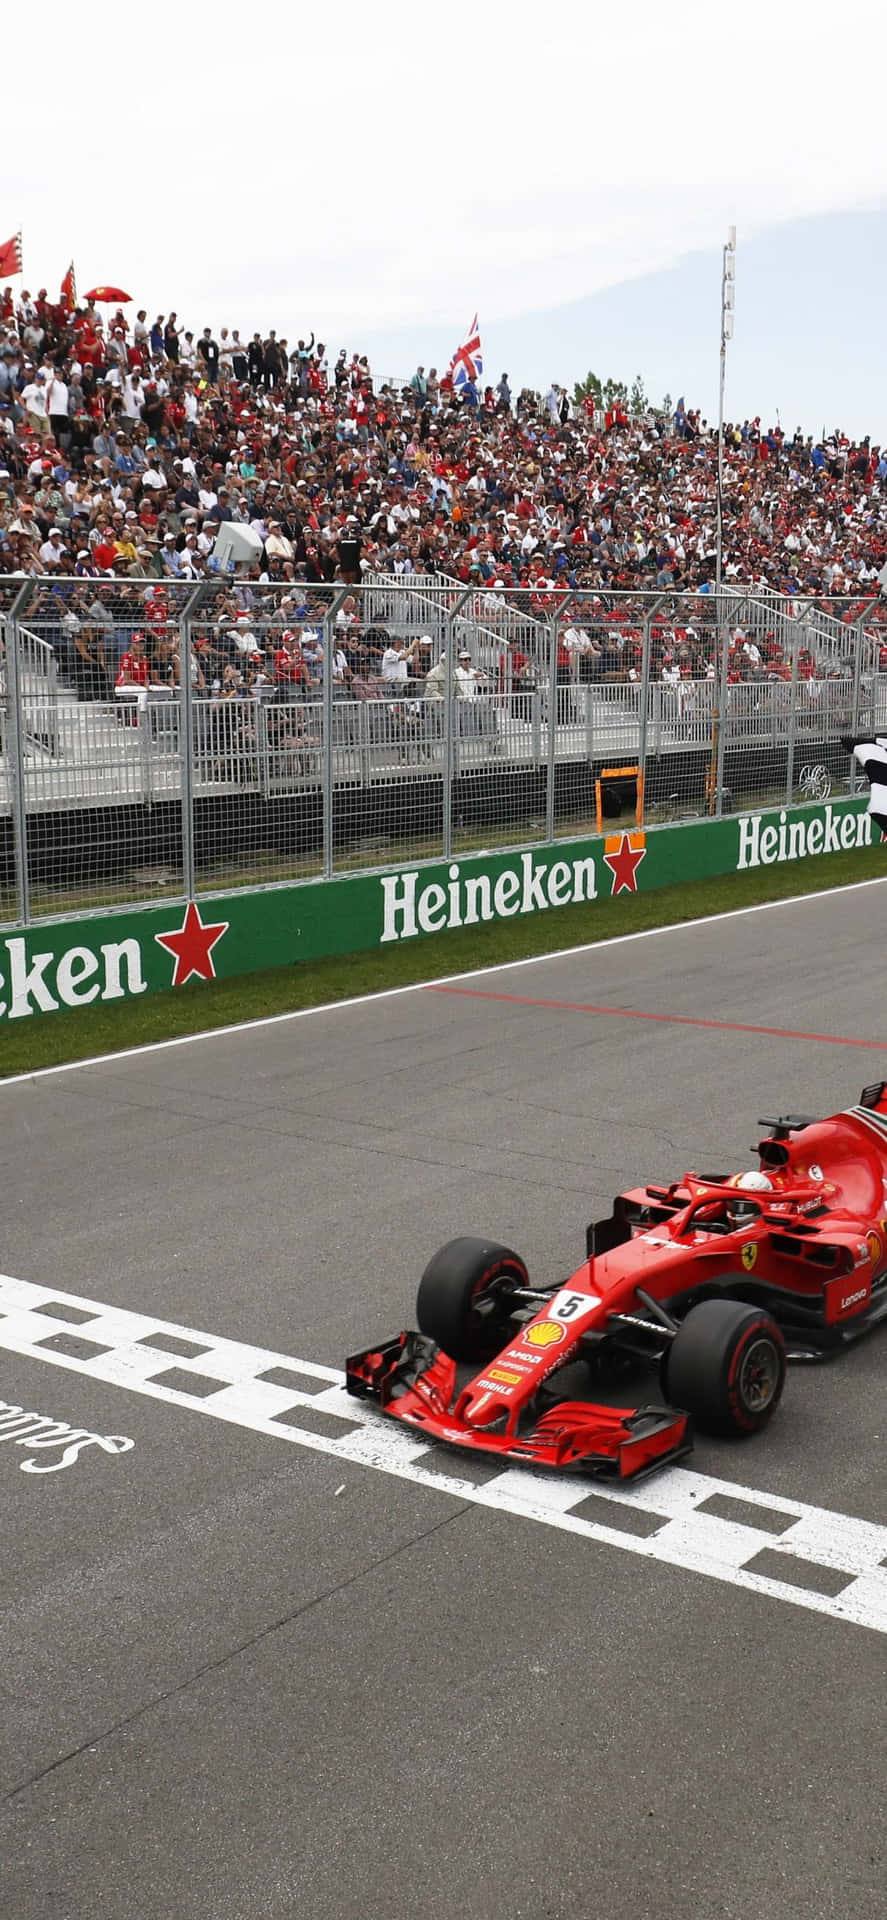 Wallpaperäg Racerbana Med Formula 1 Iphone-bakgrunden. Wallpaper